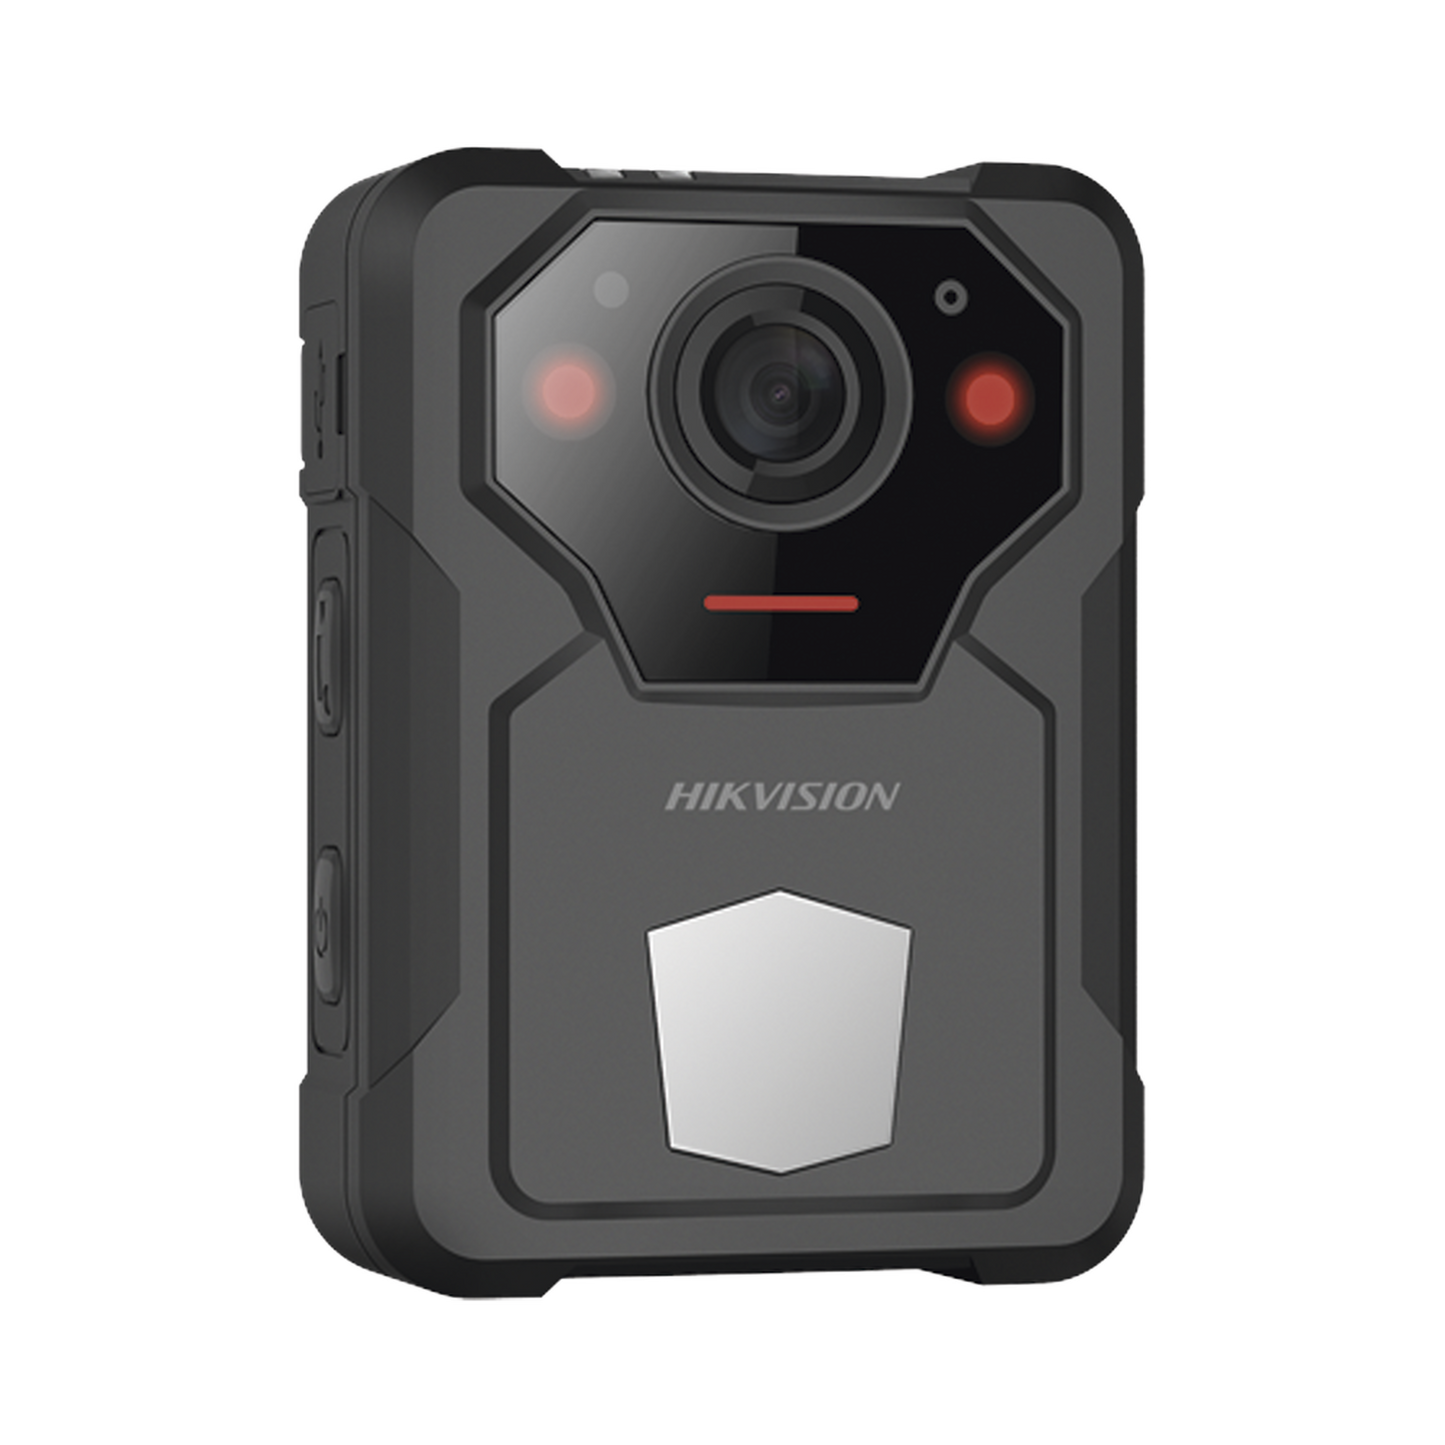 Body Camera Portátil / Grabación a 2K (4 Megapixel)  / Fotos de Hasta 40 Megapixel / IP54 / H.265 / 64 GB de Almacenamiento / Microfono Integrado / GPS